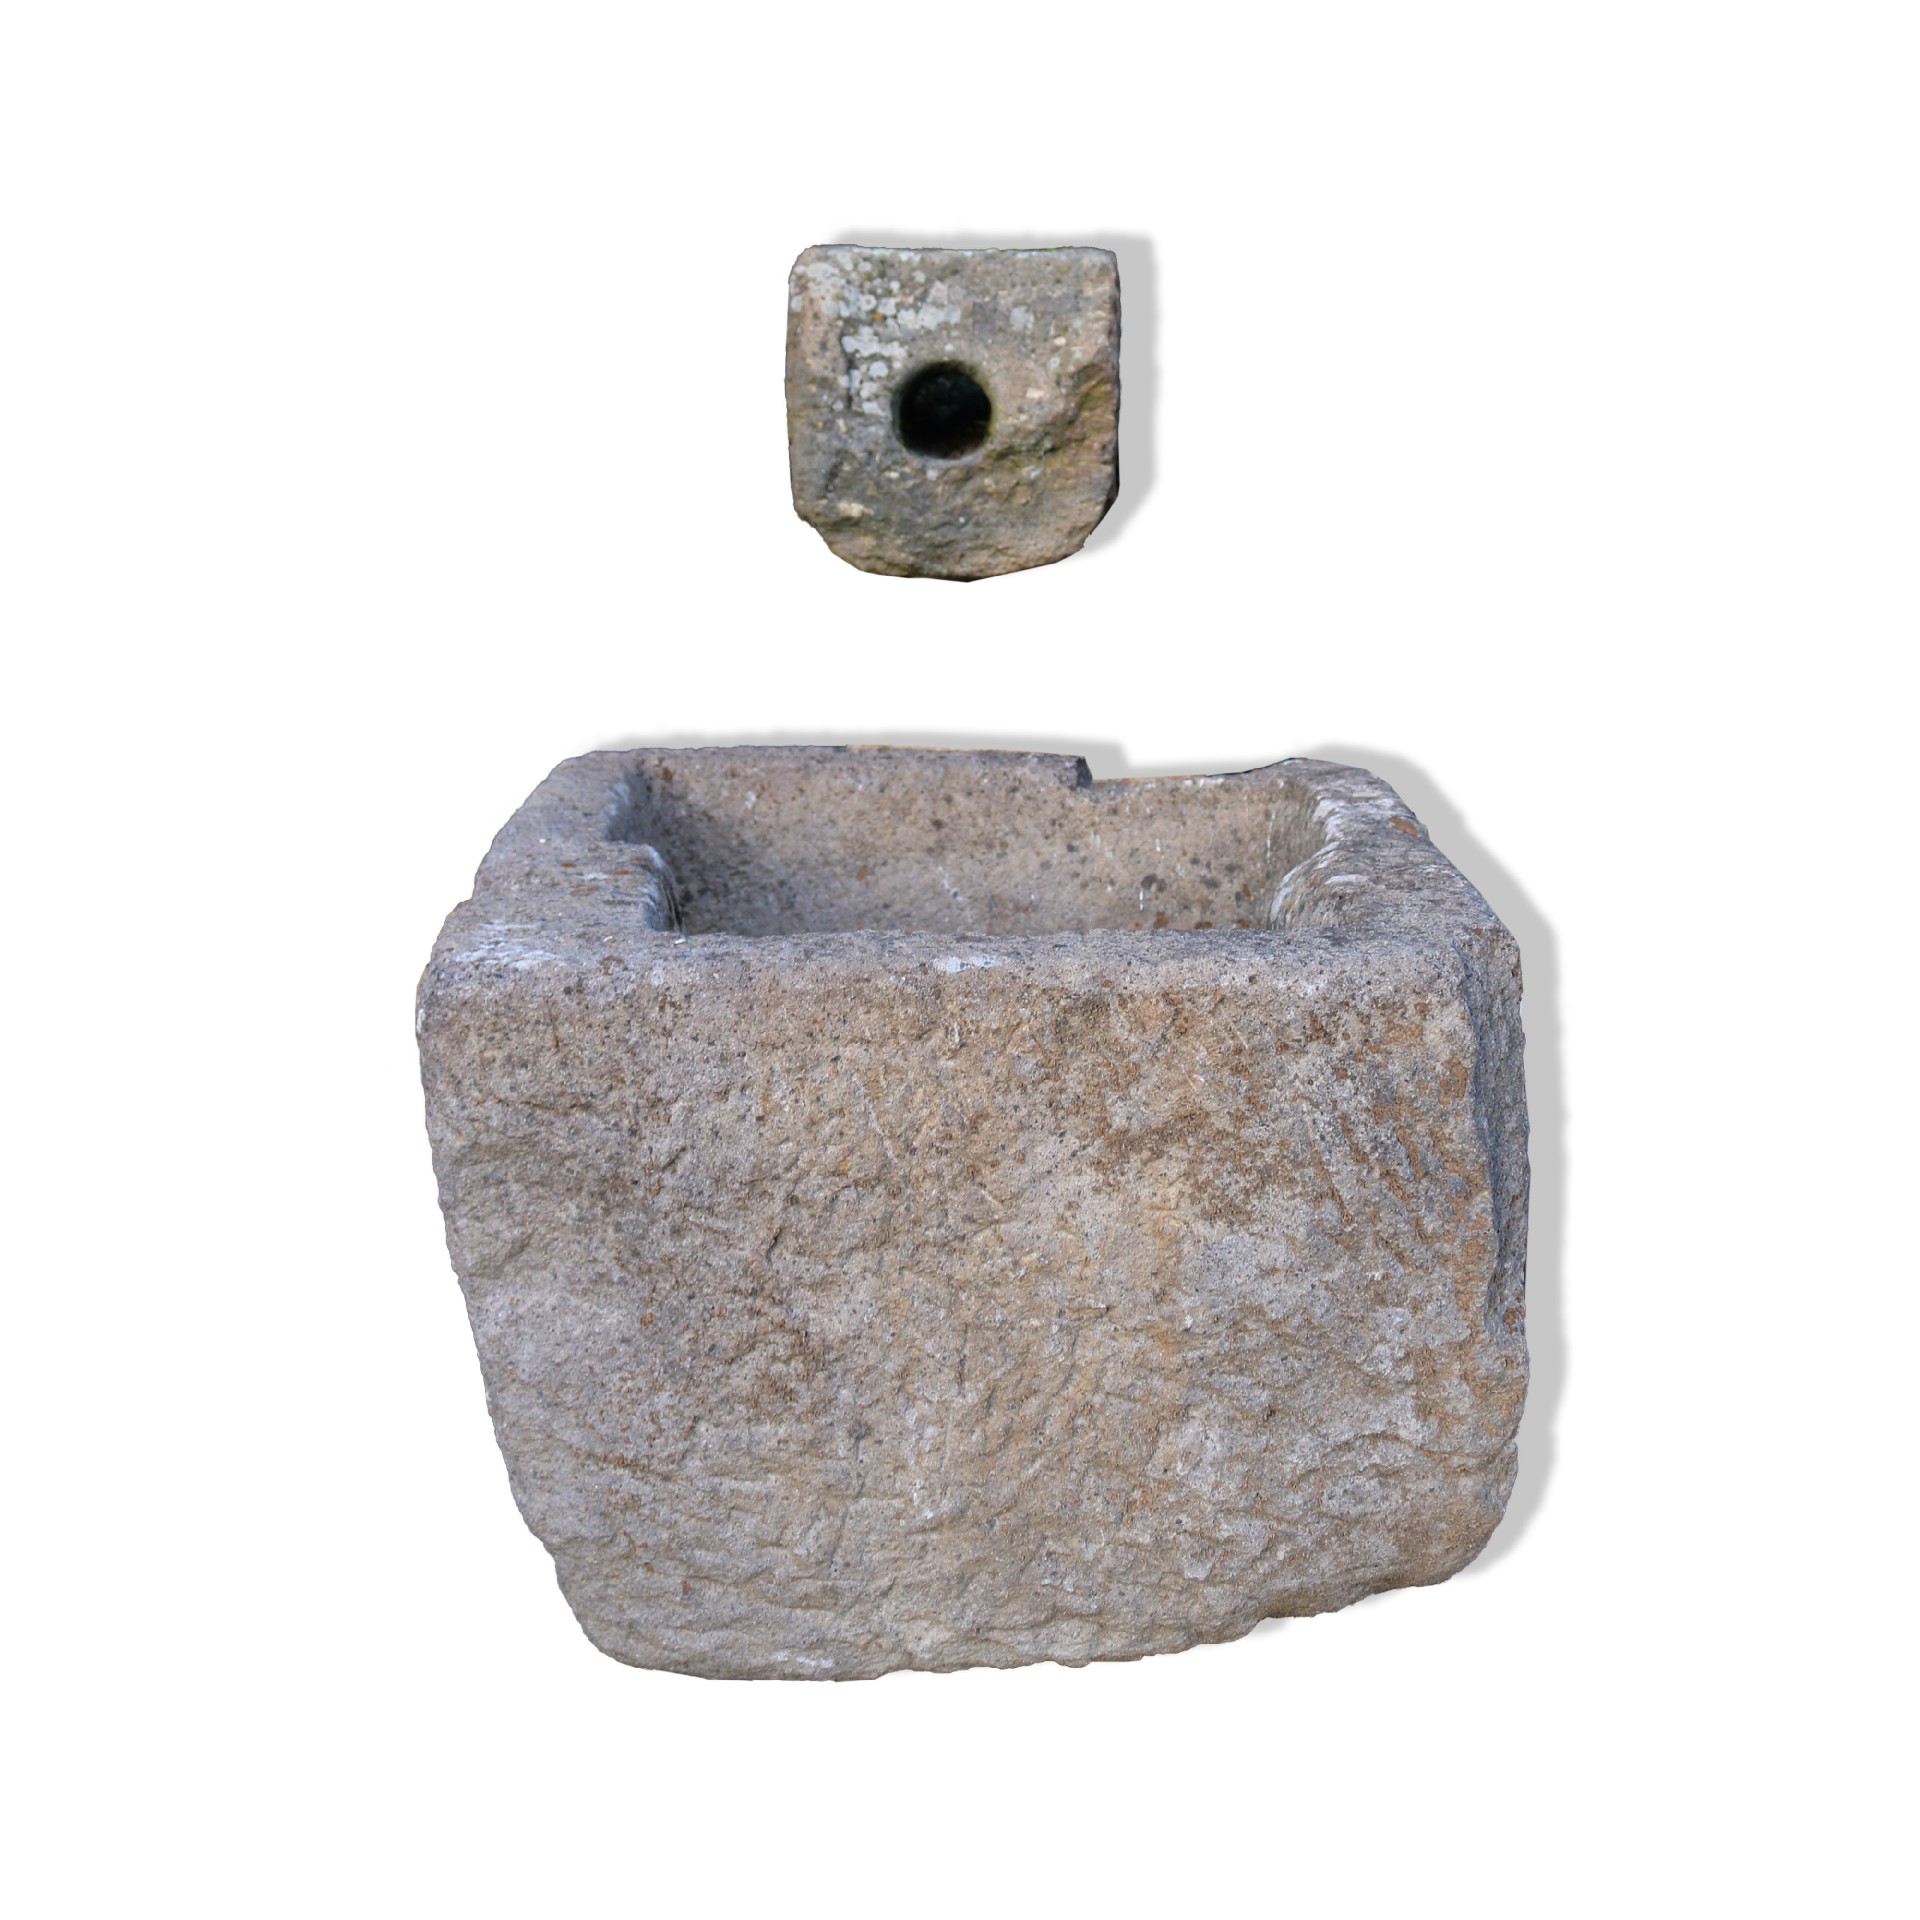 Fontana antica in pietra. - Fontane Antiche - Arredo Giardino - Prodotti - Antichità Fiorillo